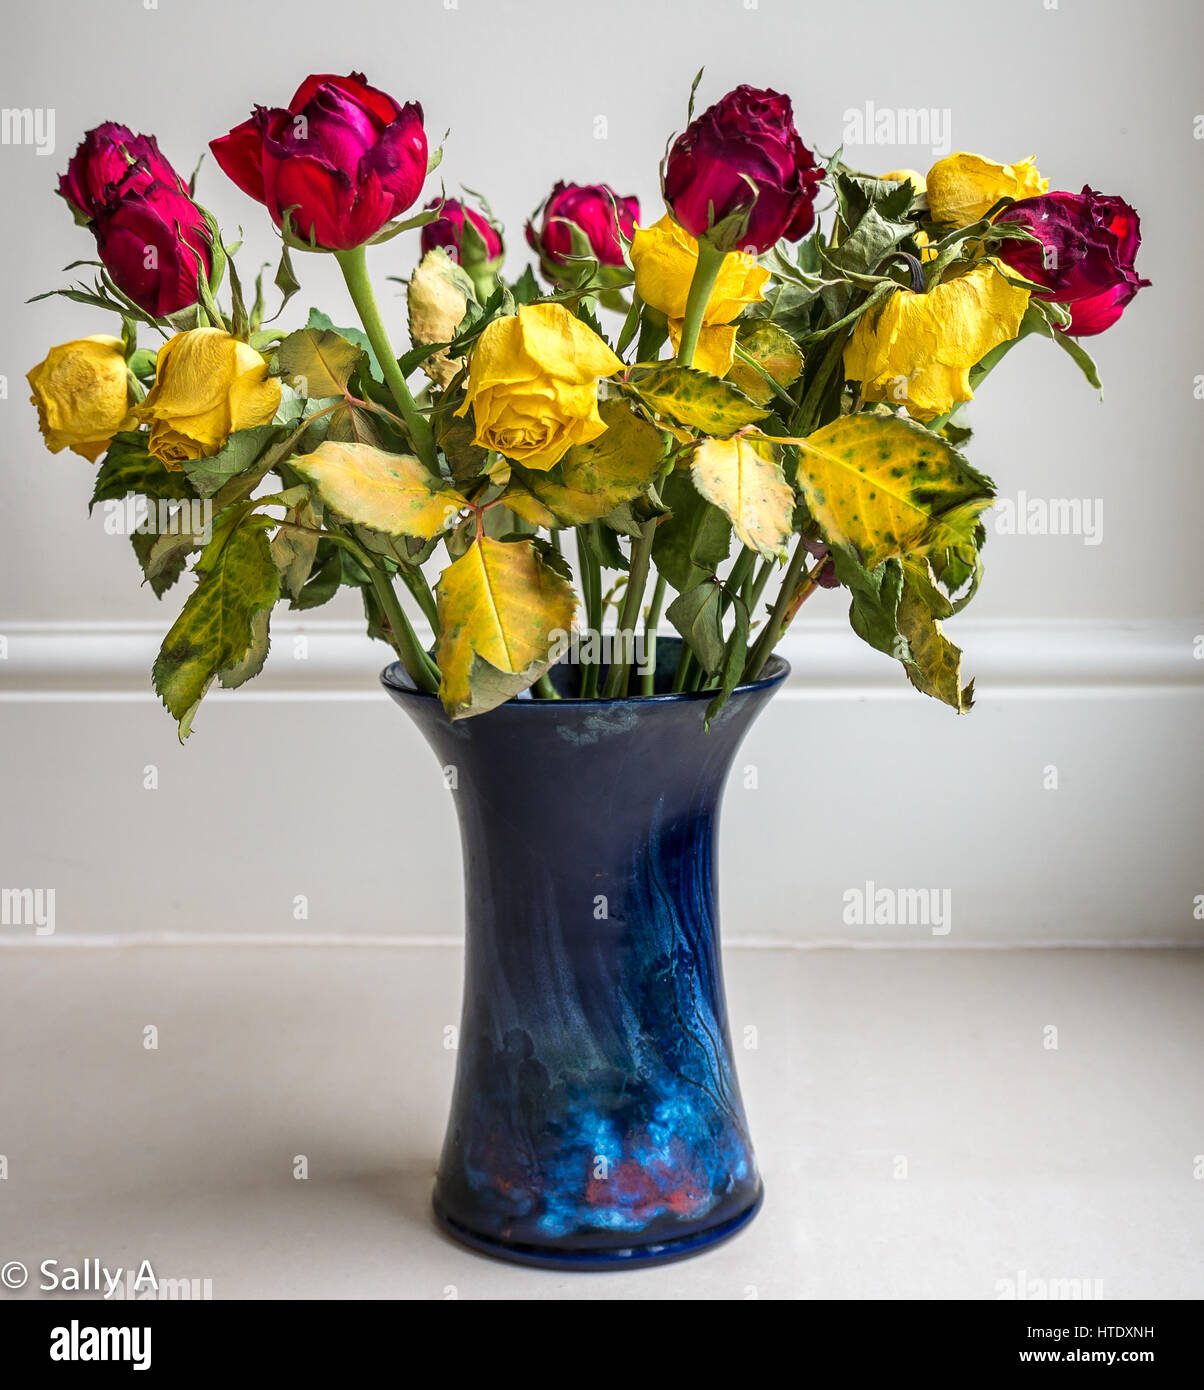 S'est évanoui à mourir séché rose des fleurs dans vase en céramique bleu contre un fond uni Banque D'Images